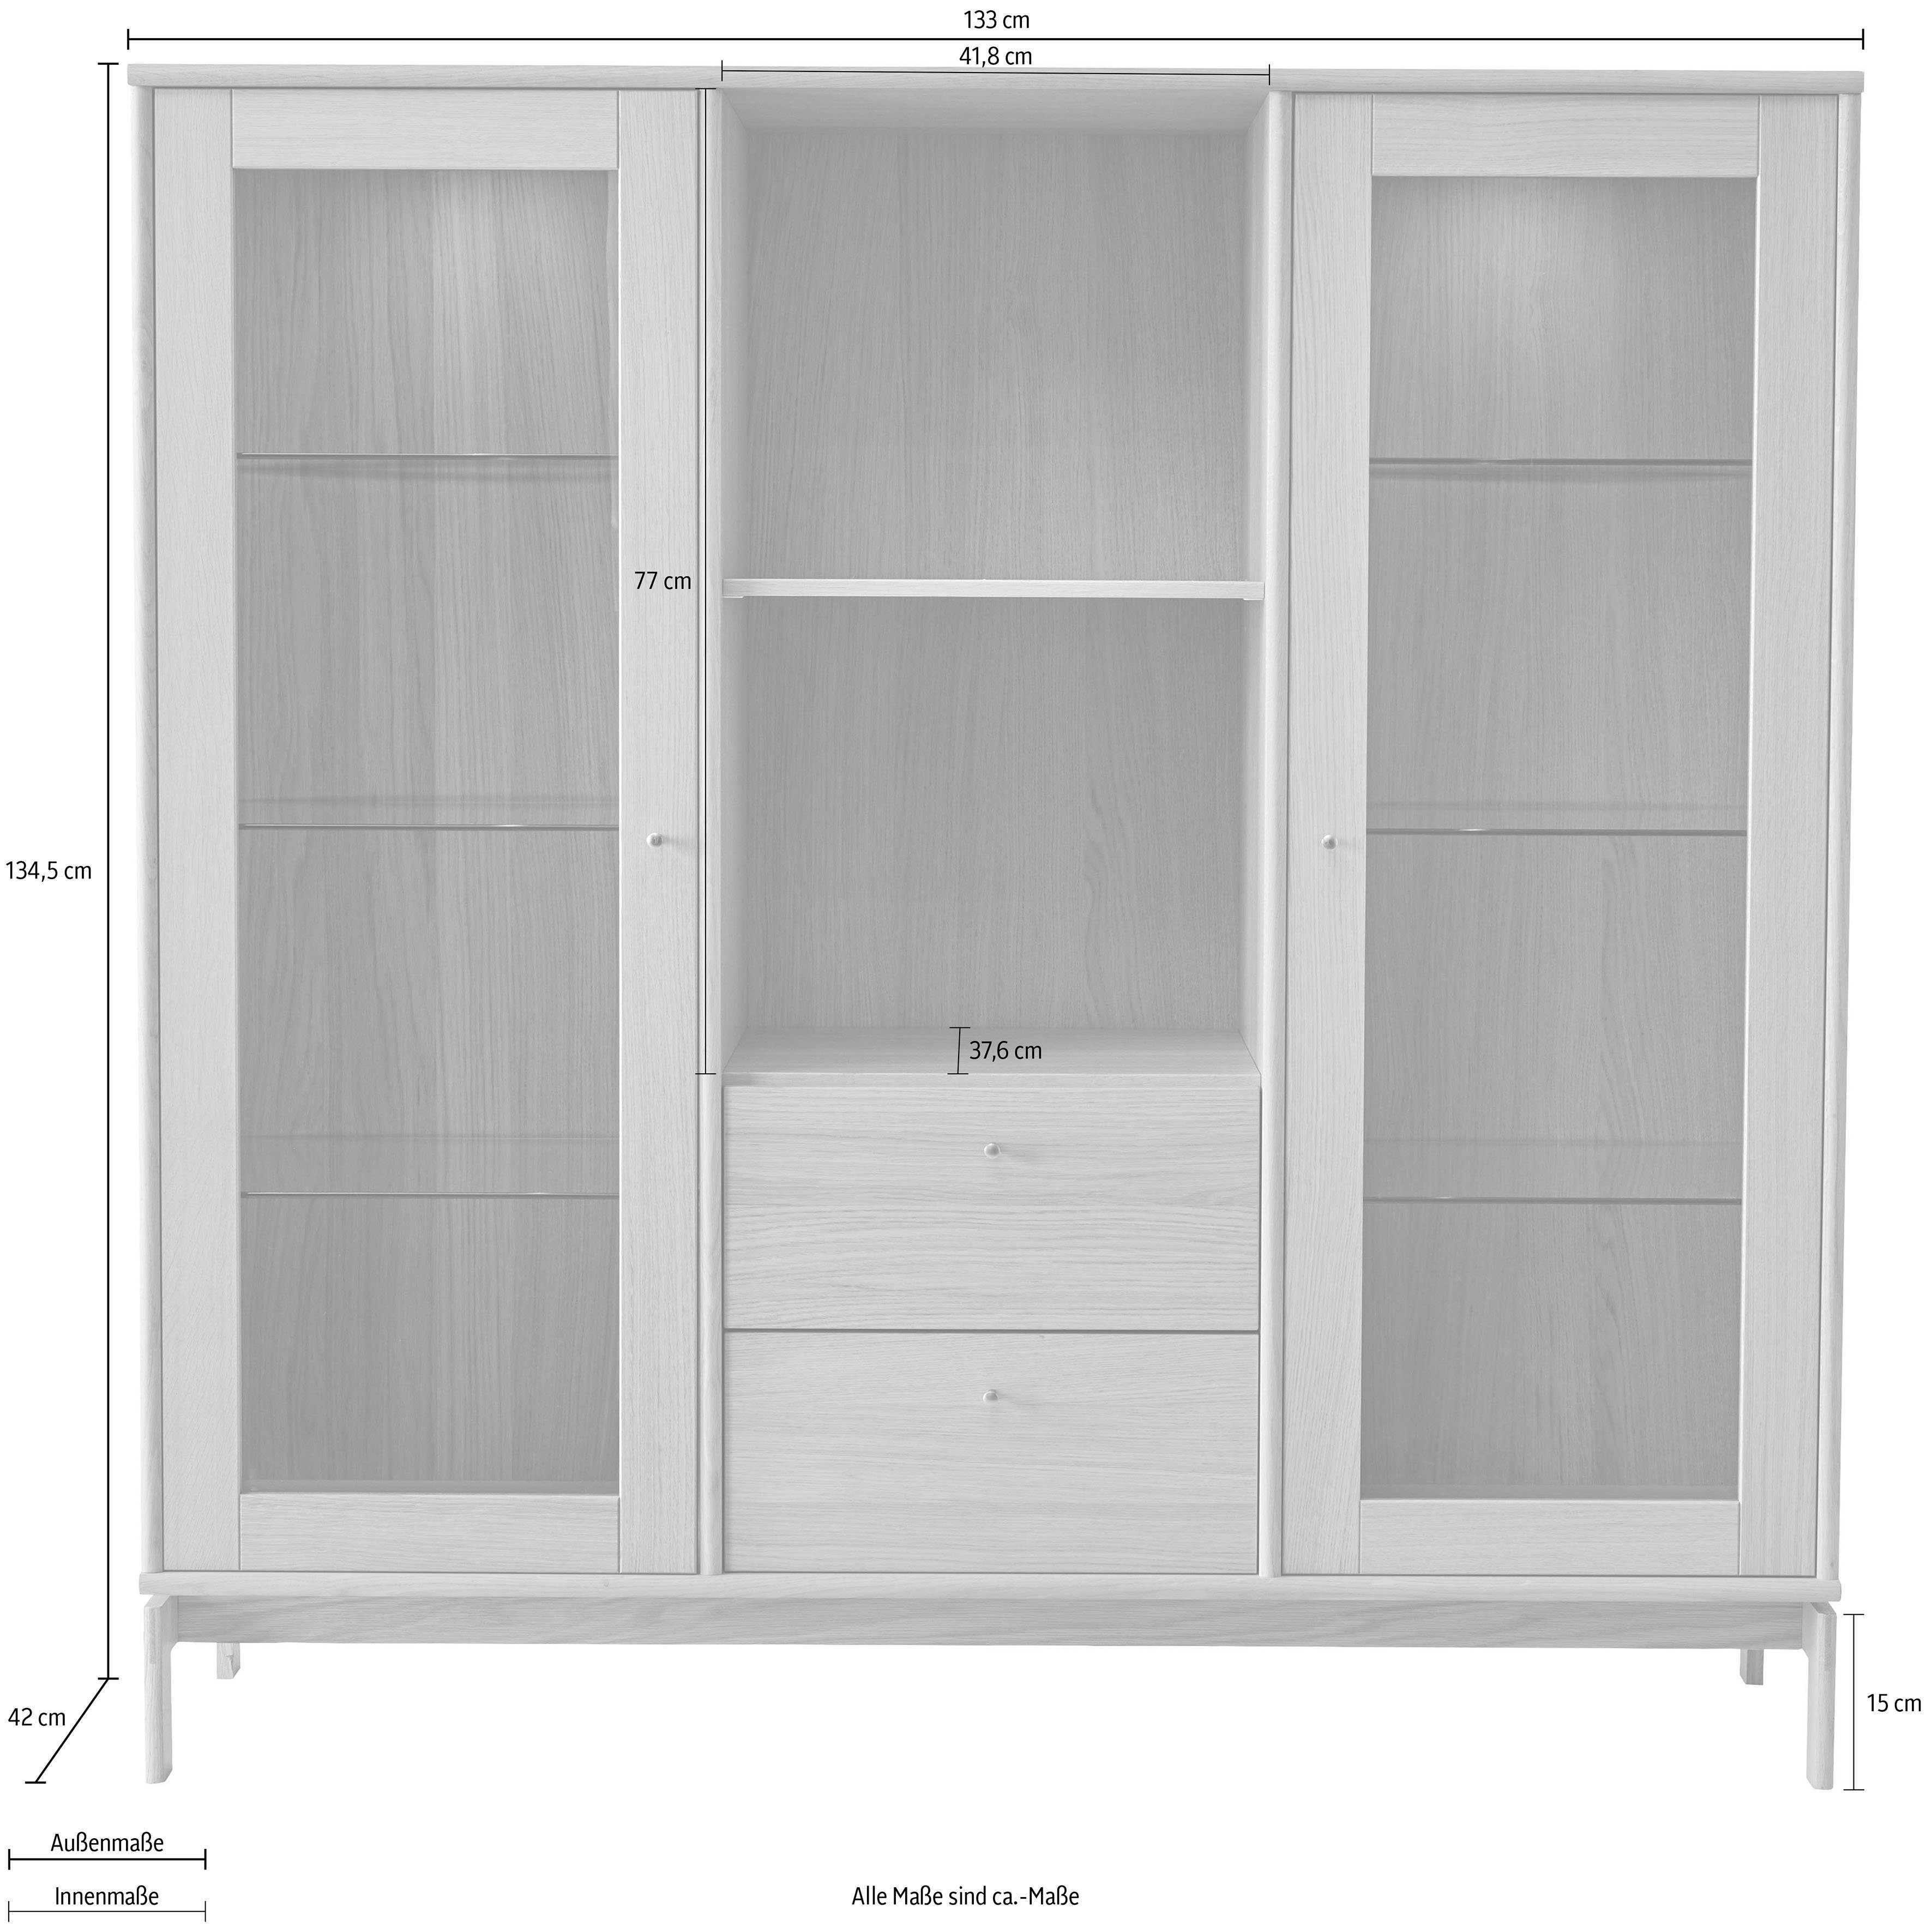 Hammel Furniture Vitrine Mistral Schubladen, Glasschrank, Türen Designmöbel B: 133 anpassungsbar Standvitrine mit cm, Eiche, und